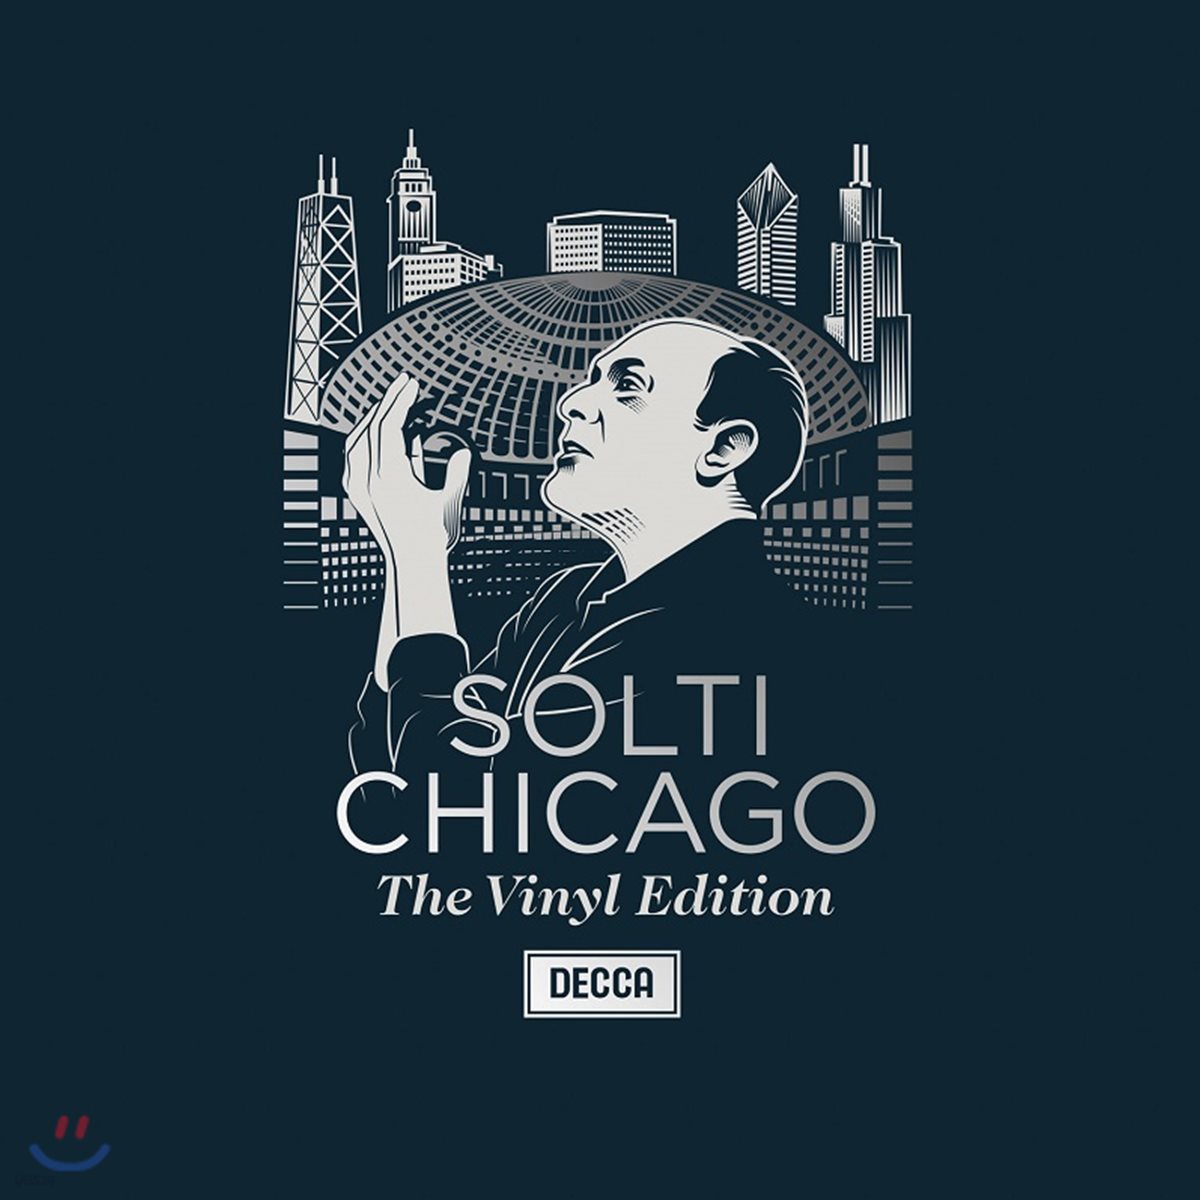 게오르그 솔티 & 시카고 심포니 바이닐 에디션 (Georg Solti & Chicago - The Vinyl Edition) [6LP 넘버링 한정반]